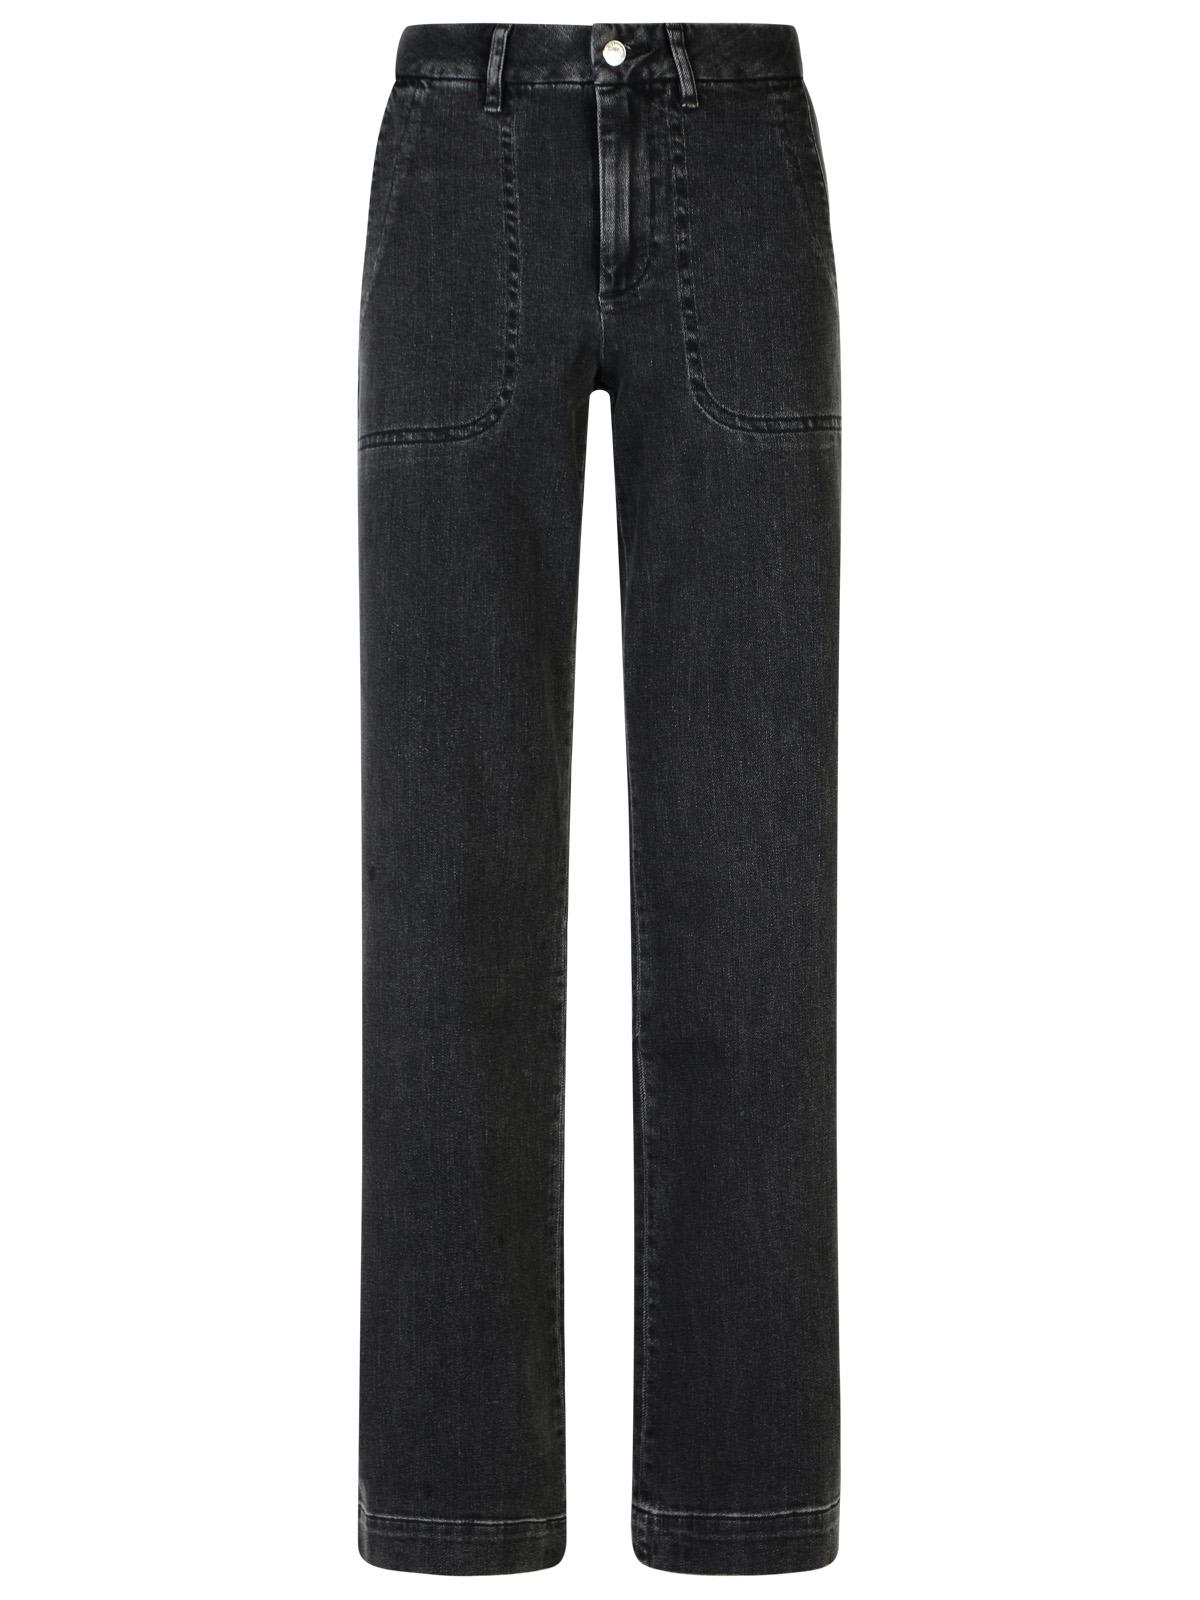 A. P.C. seaside Black Cotton Jeans